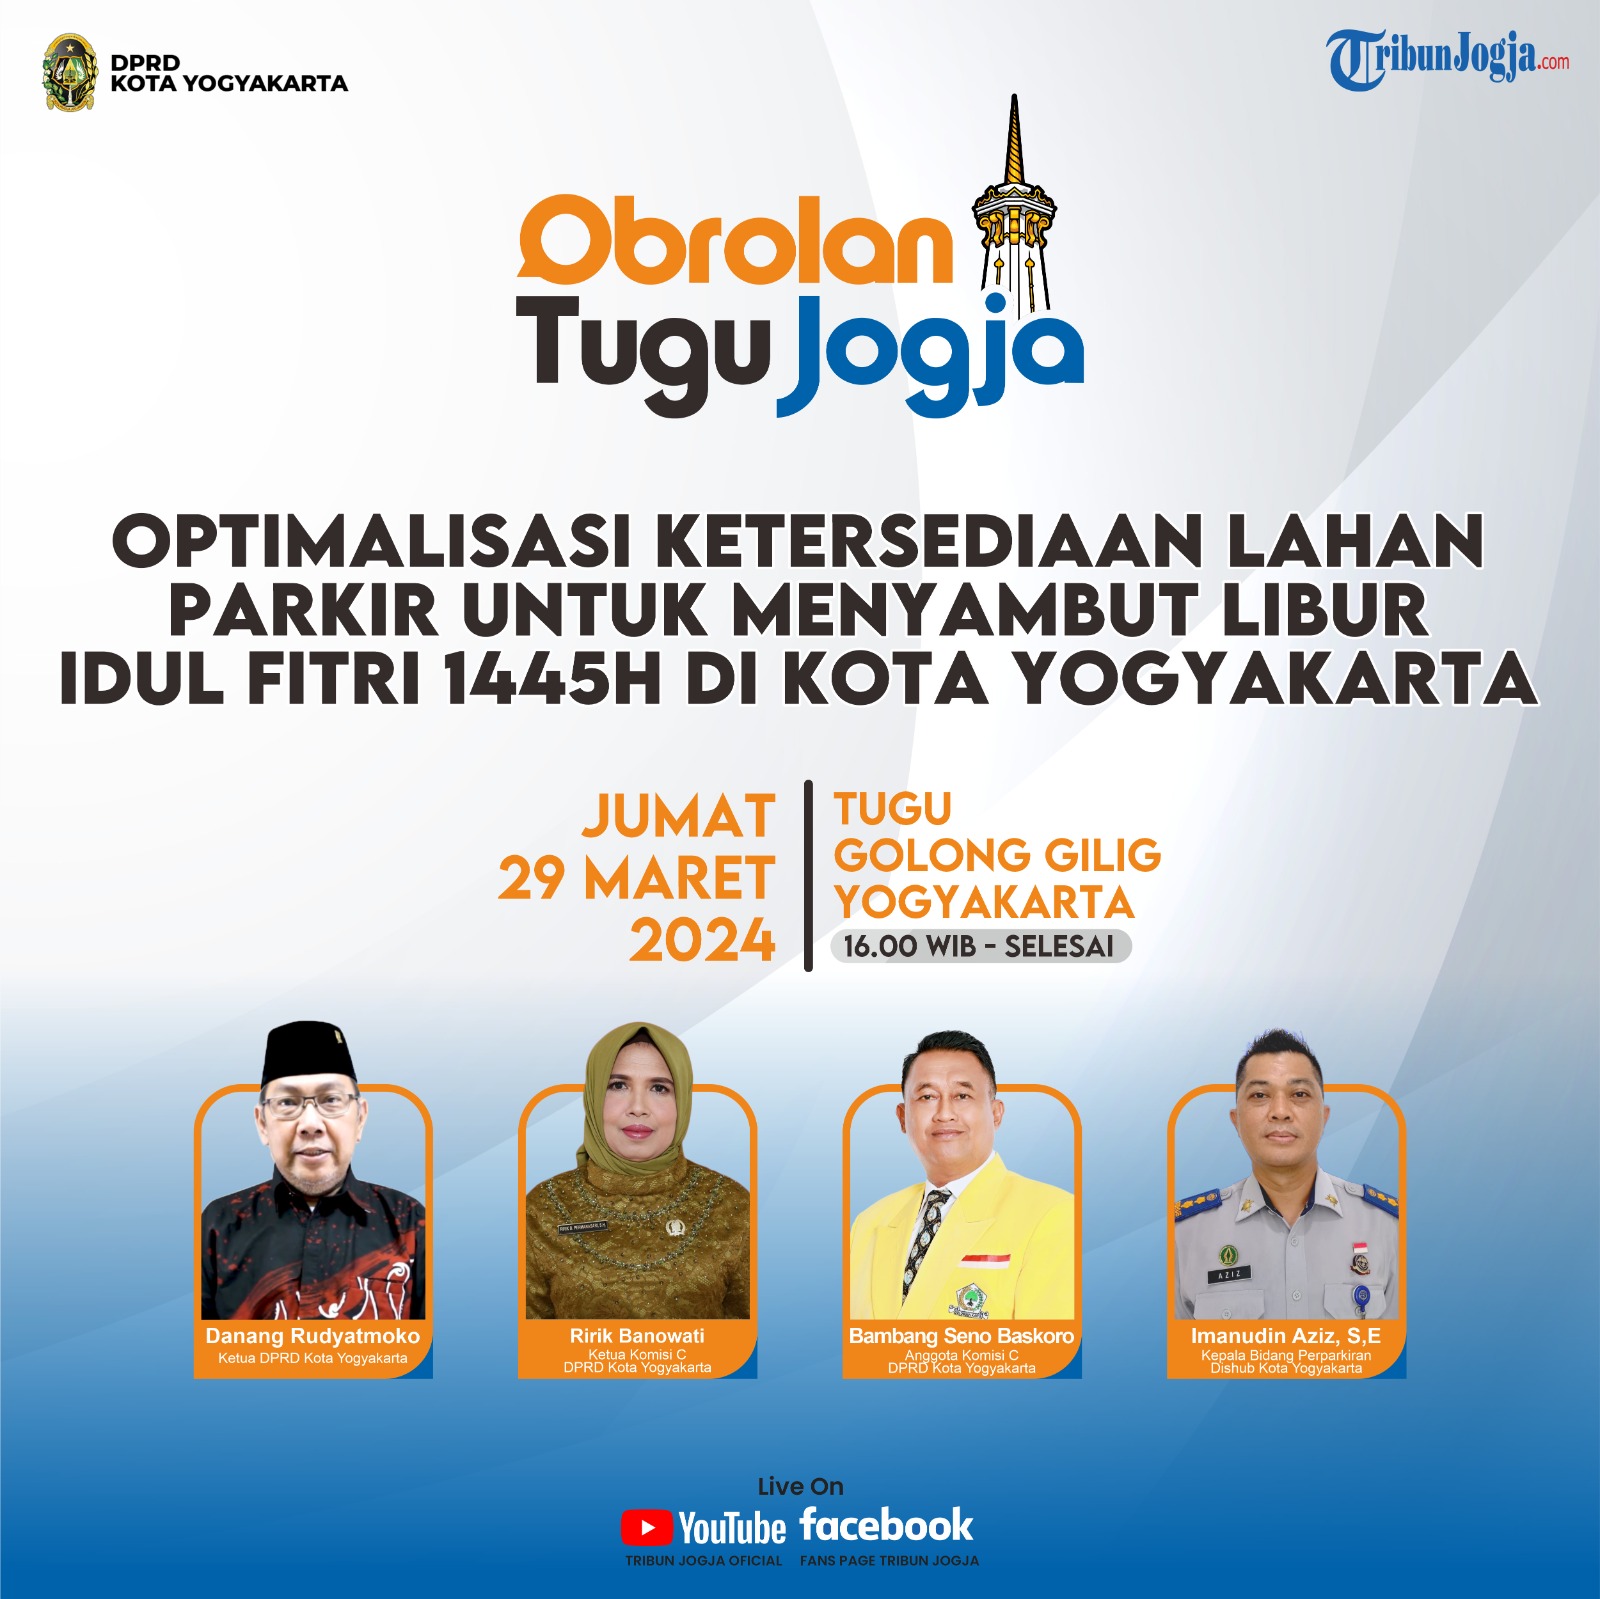 Optimalisasi Ketersediaan Lahan Parkir Untuk Menyambut Libur Idul Fitri 1445H Di Kota Yogyakarta